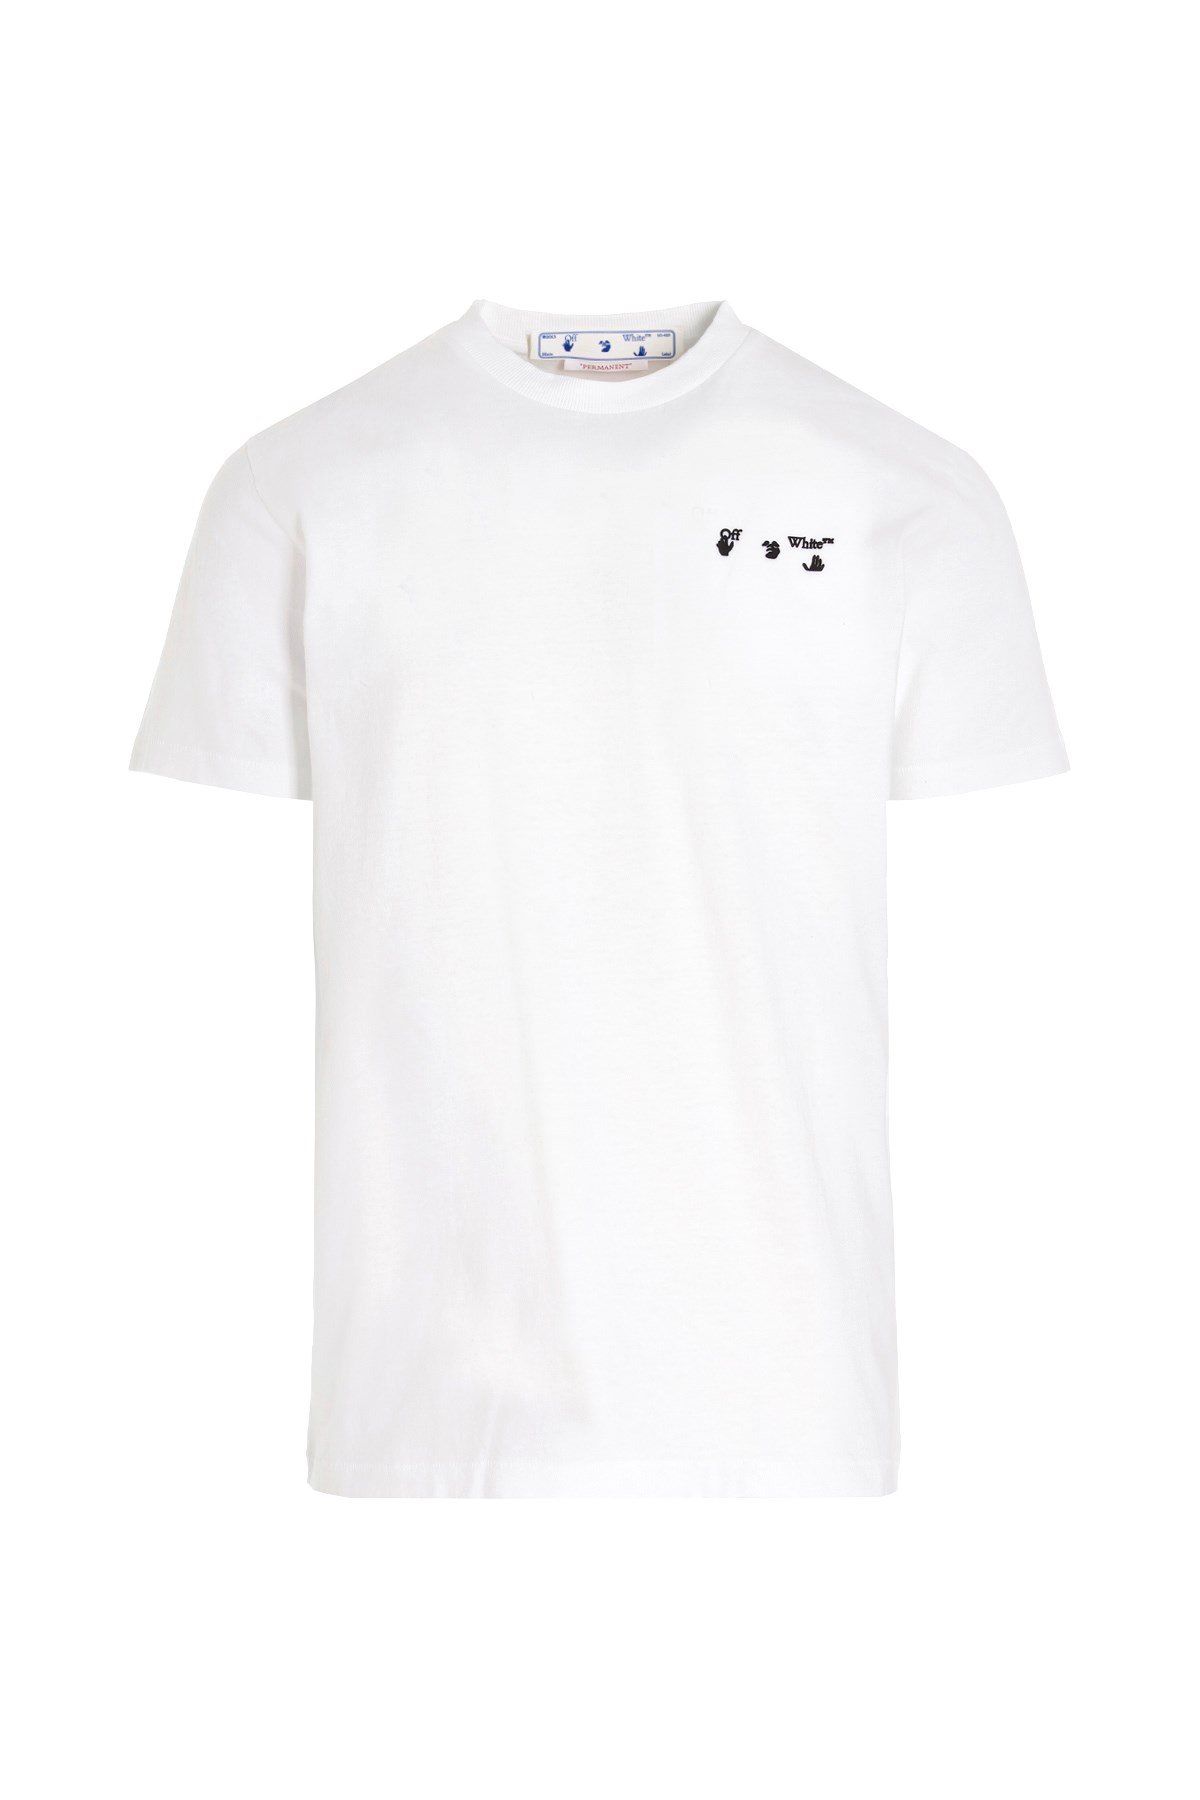 OFF-WHITE 'Ow Logo T-Shirt'